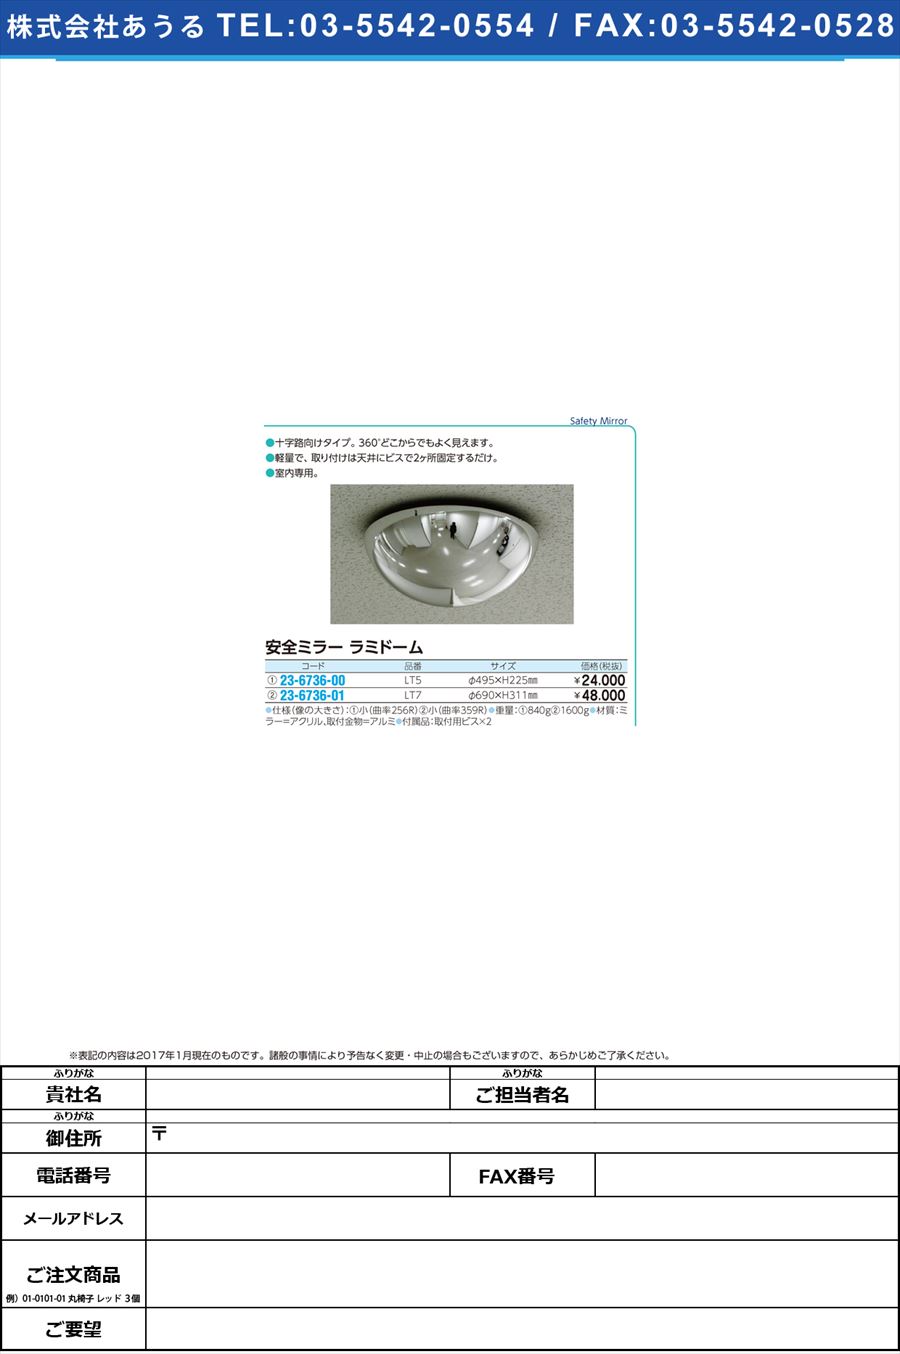 (23-6736-01)安全ミラー ラミドーム ｱﾝｾﾞﾝﾐﾗｰﾗﾐﾄﾞｰﾑ LT7(ｹｲ690X311MM)(23-6736-01)【1台単位】【2017年カタログ商品】